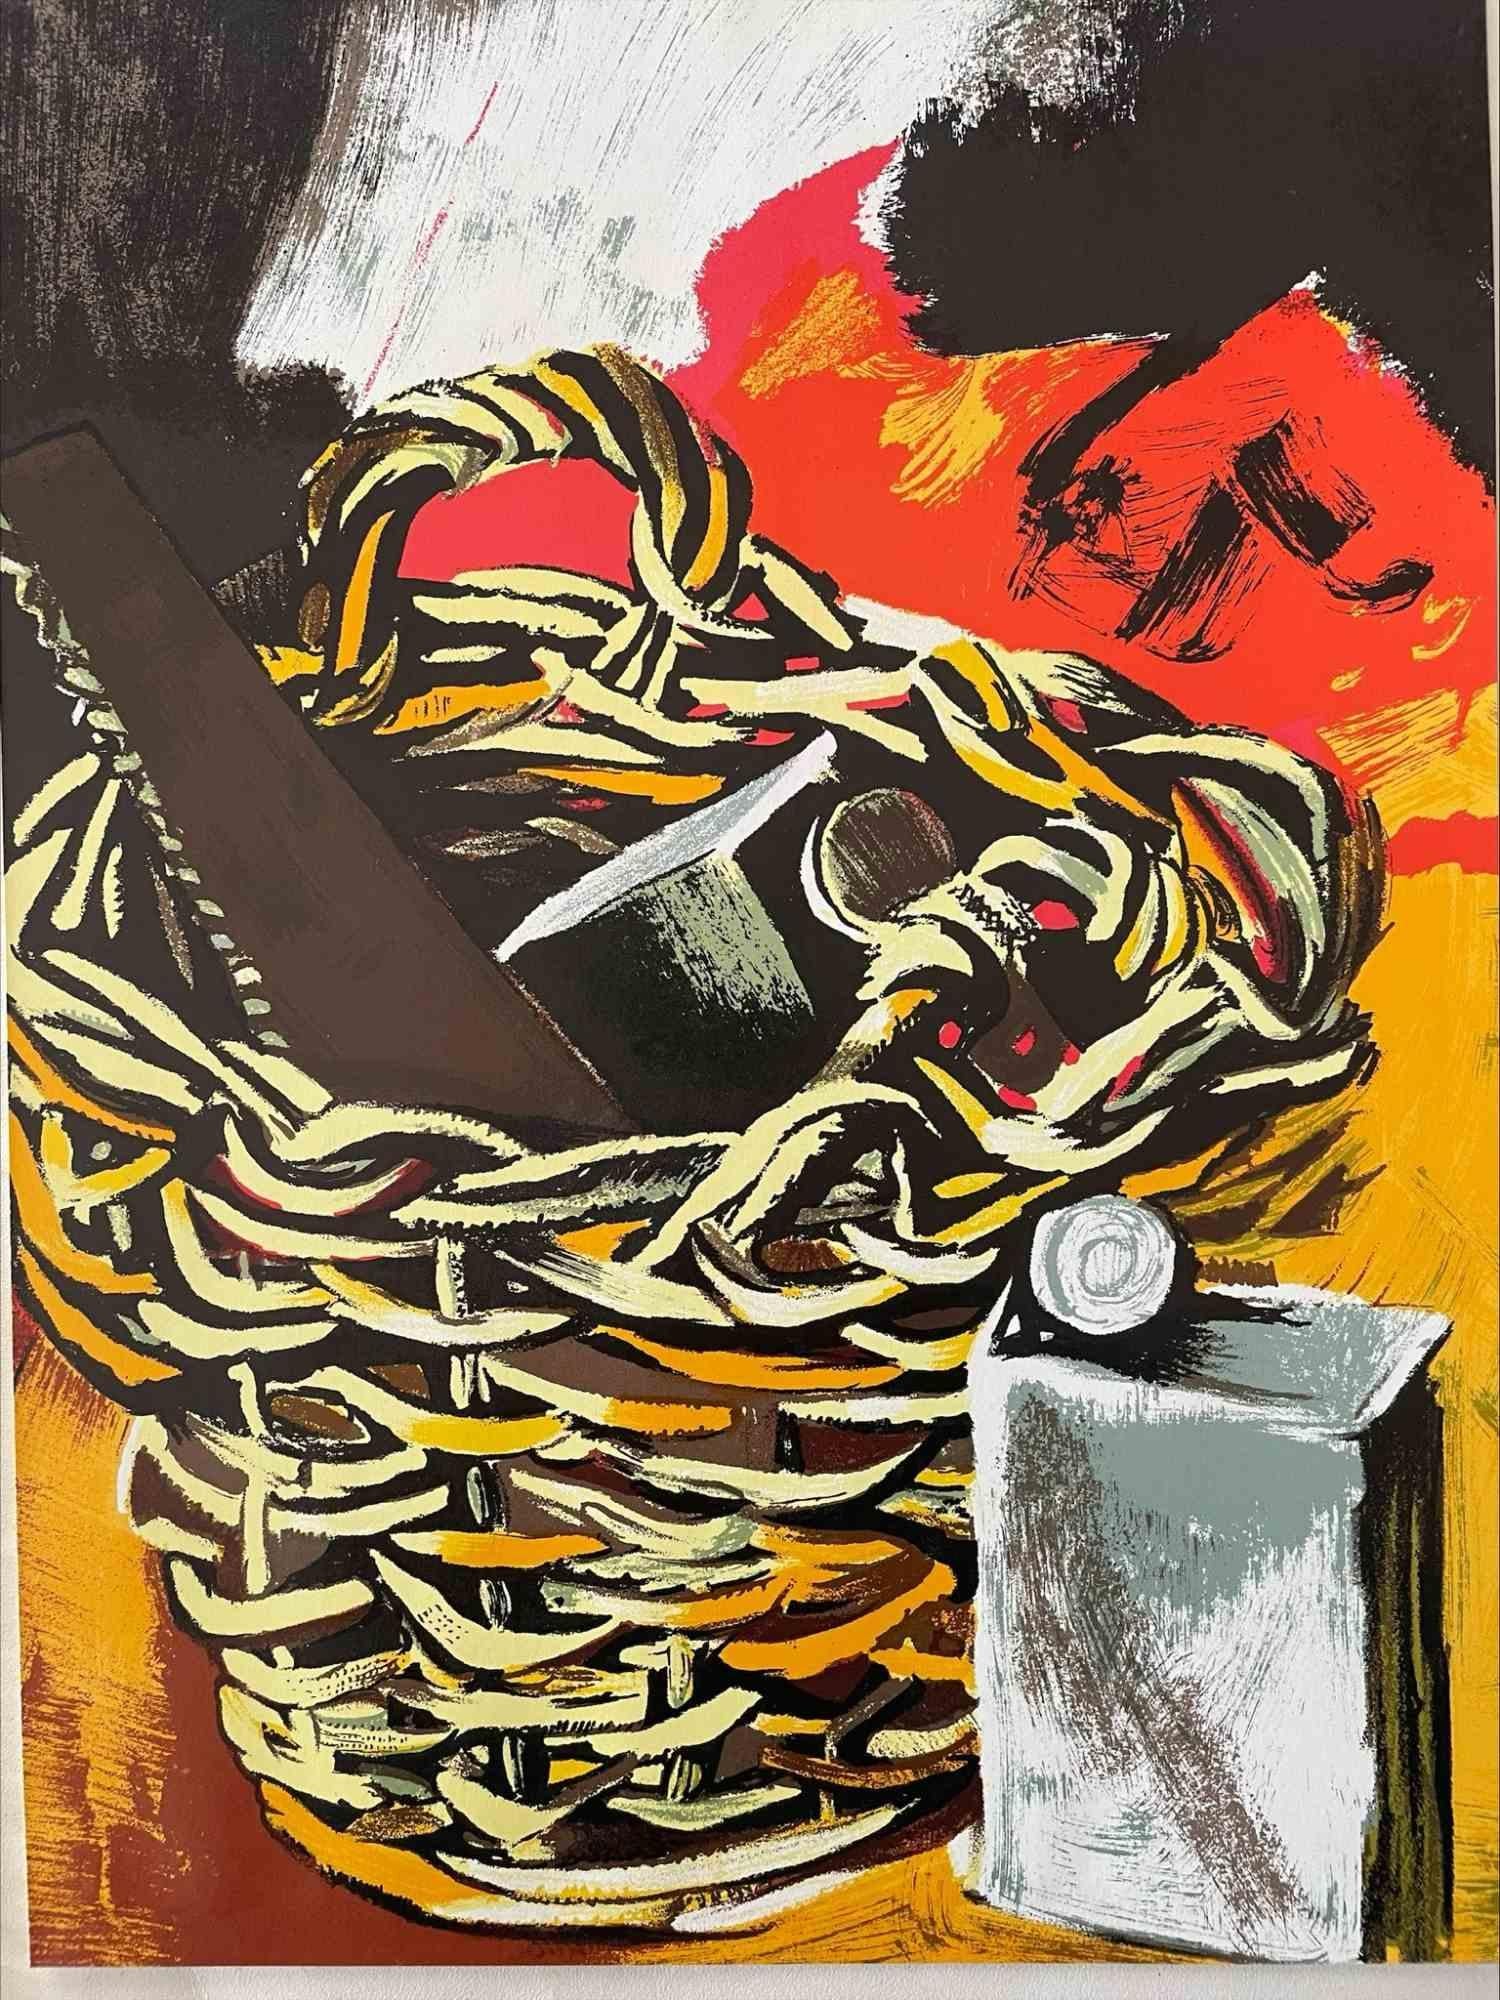 Hommage à Guttuso - Basket and Saw est une estampe de l'artiste sicilien Renato Guttuso (Bagheria, 1911 - Rome, 1987).

Une chromolithographie sur papier de grande qualité, éditée par la revue française XXe Siécle, et publiée dans le numéro spécial